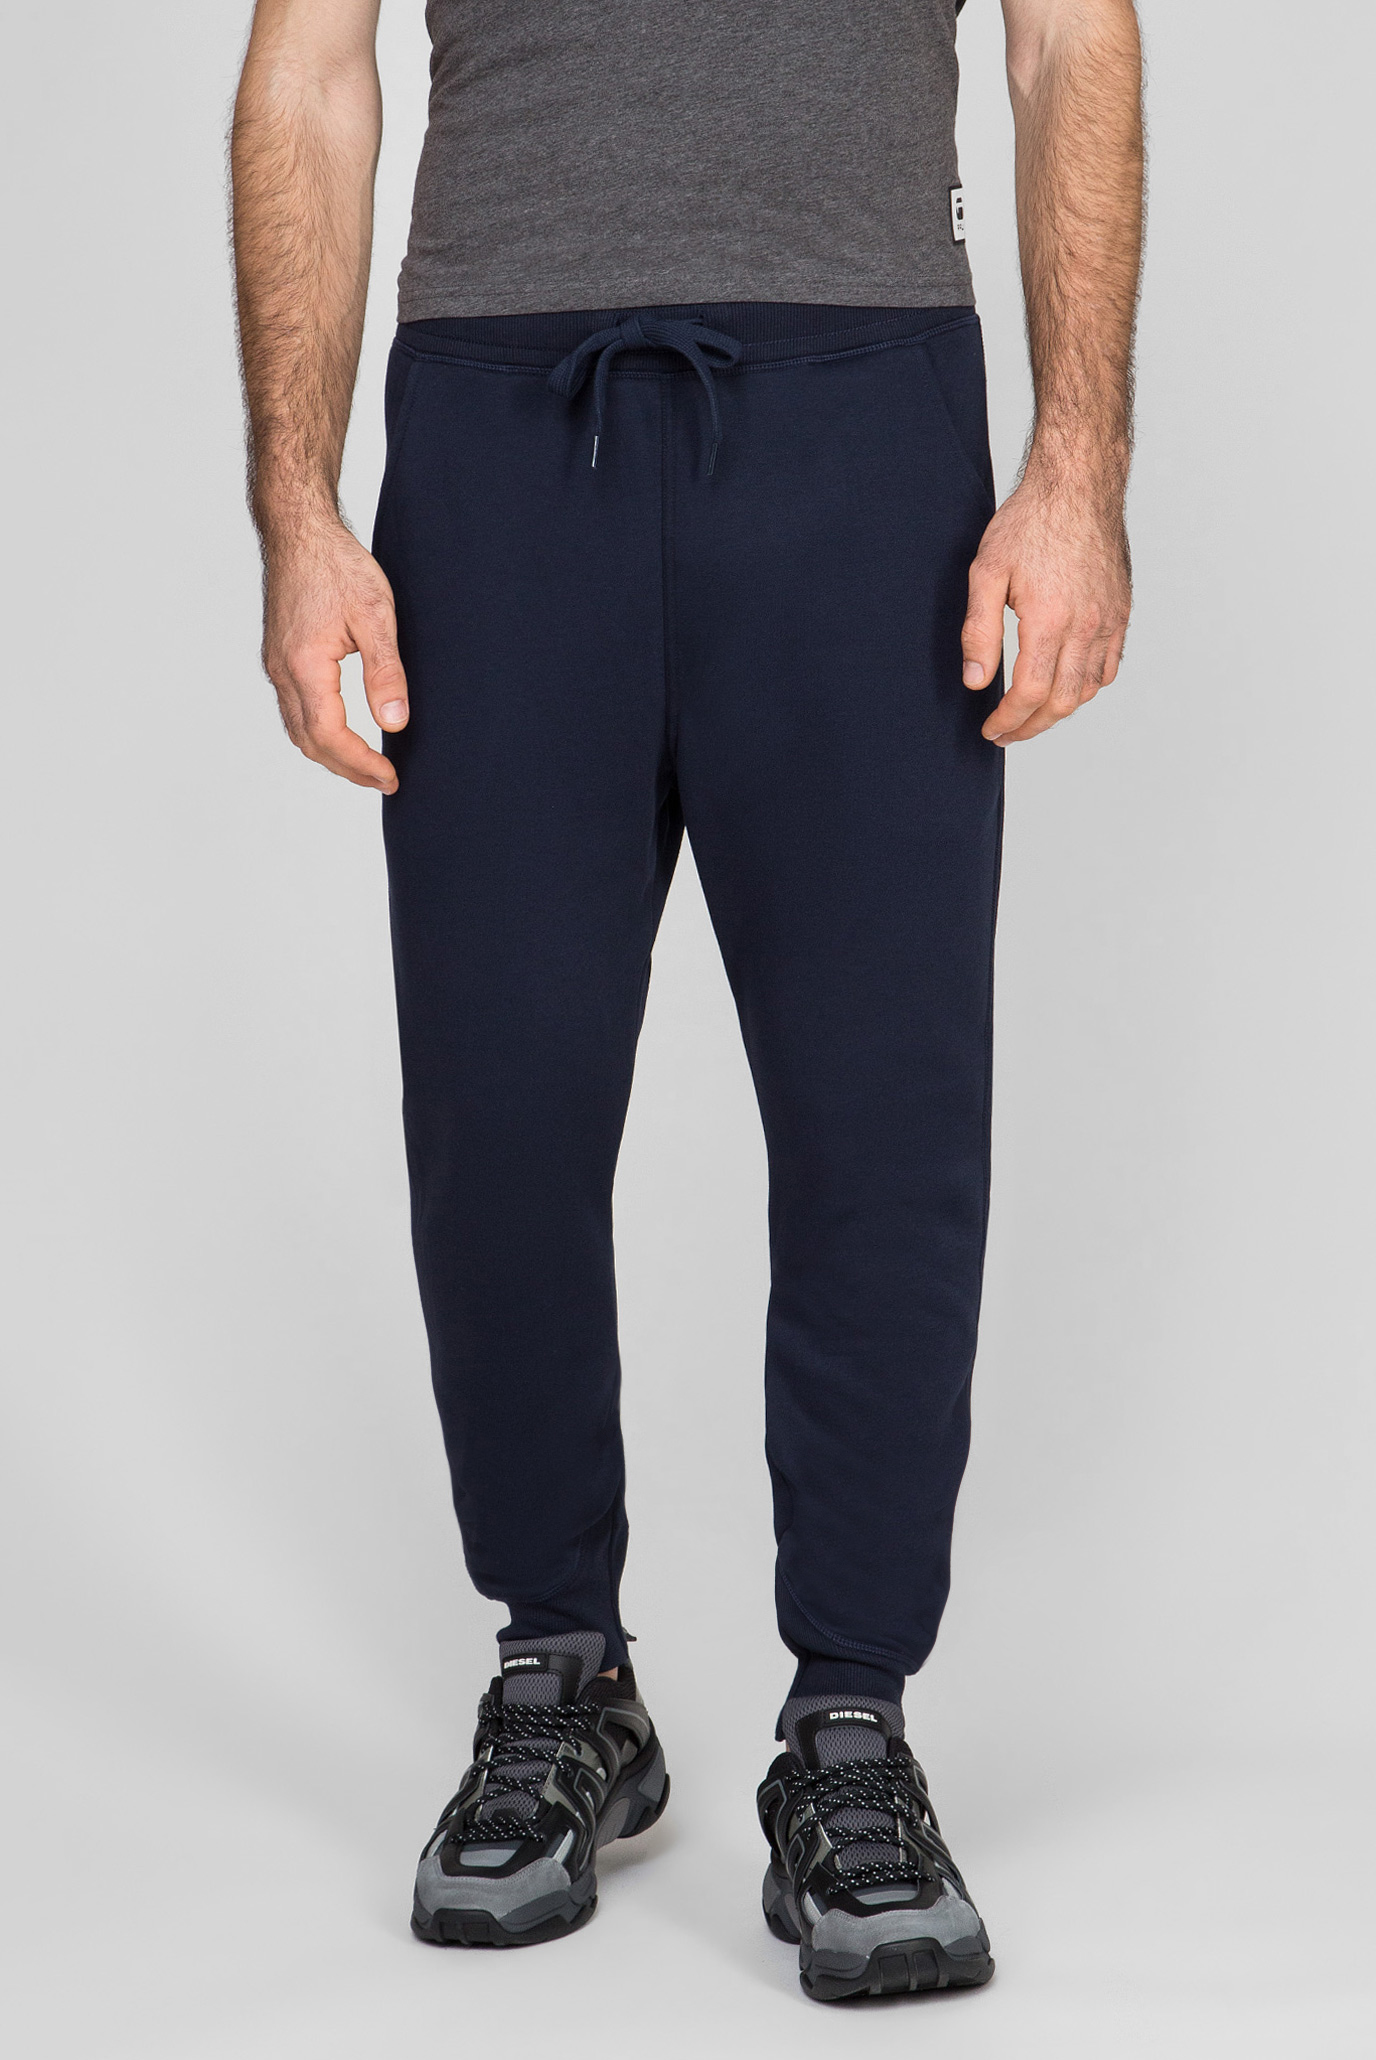 Чоловічі темно-сині спортивні штани Premium core type 1